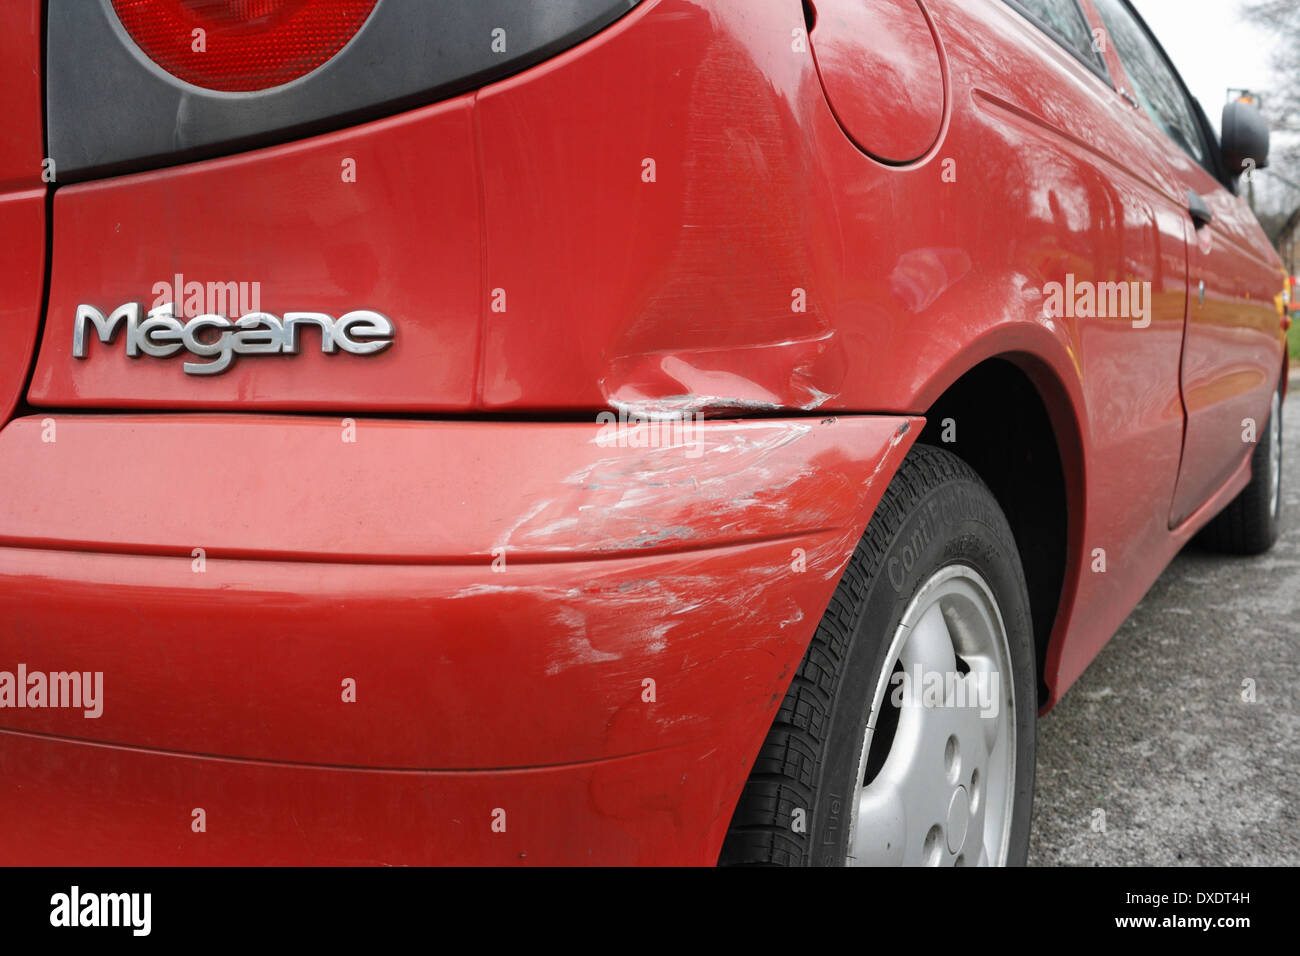 Rammschutz- und Karosserieschäden bei Renault Megane Coupe, zerkratzte Lackierung am Fahrzeug Stockfoto